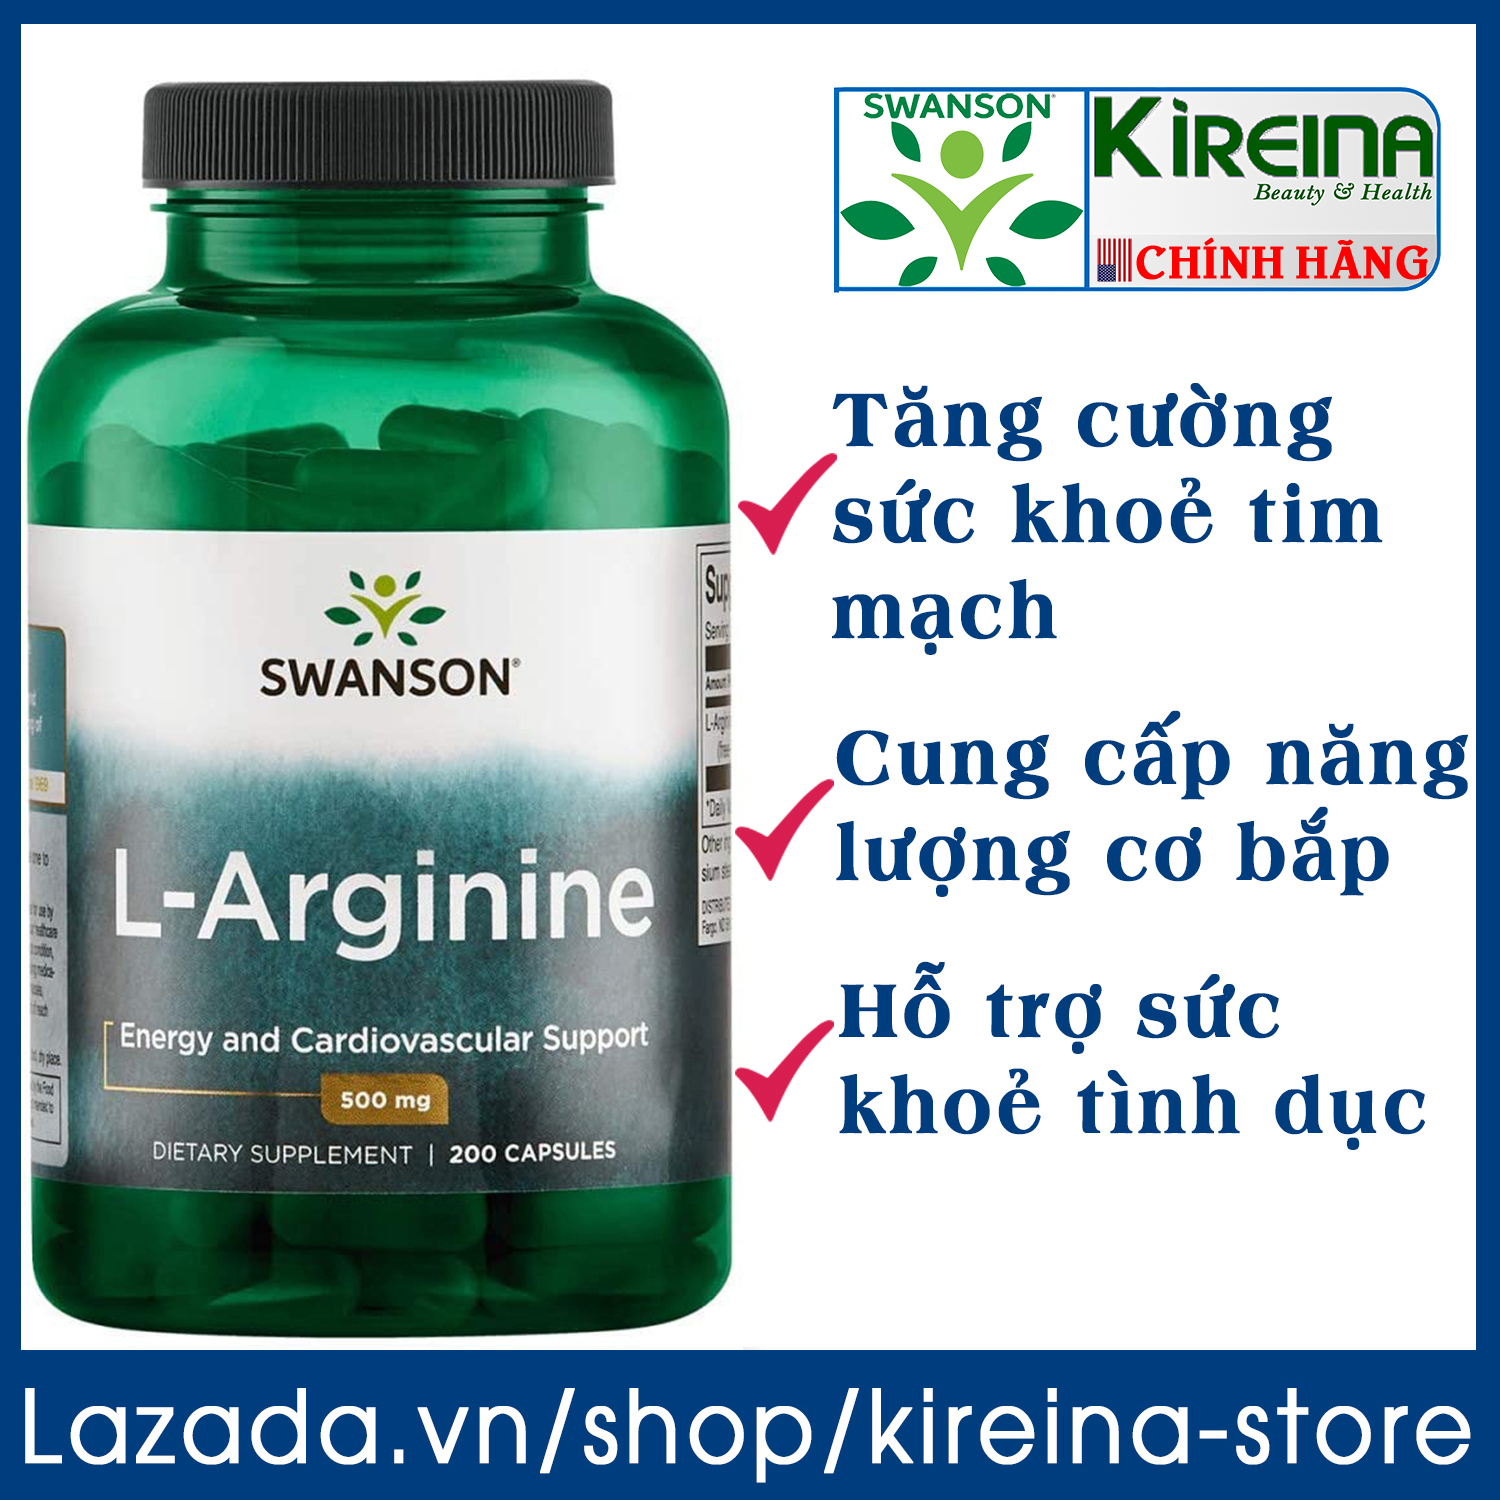 Viên uống L-Arginine hỗ trợ sức khỏe tim mạch cung cấp amino axit tạo